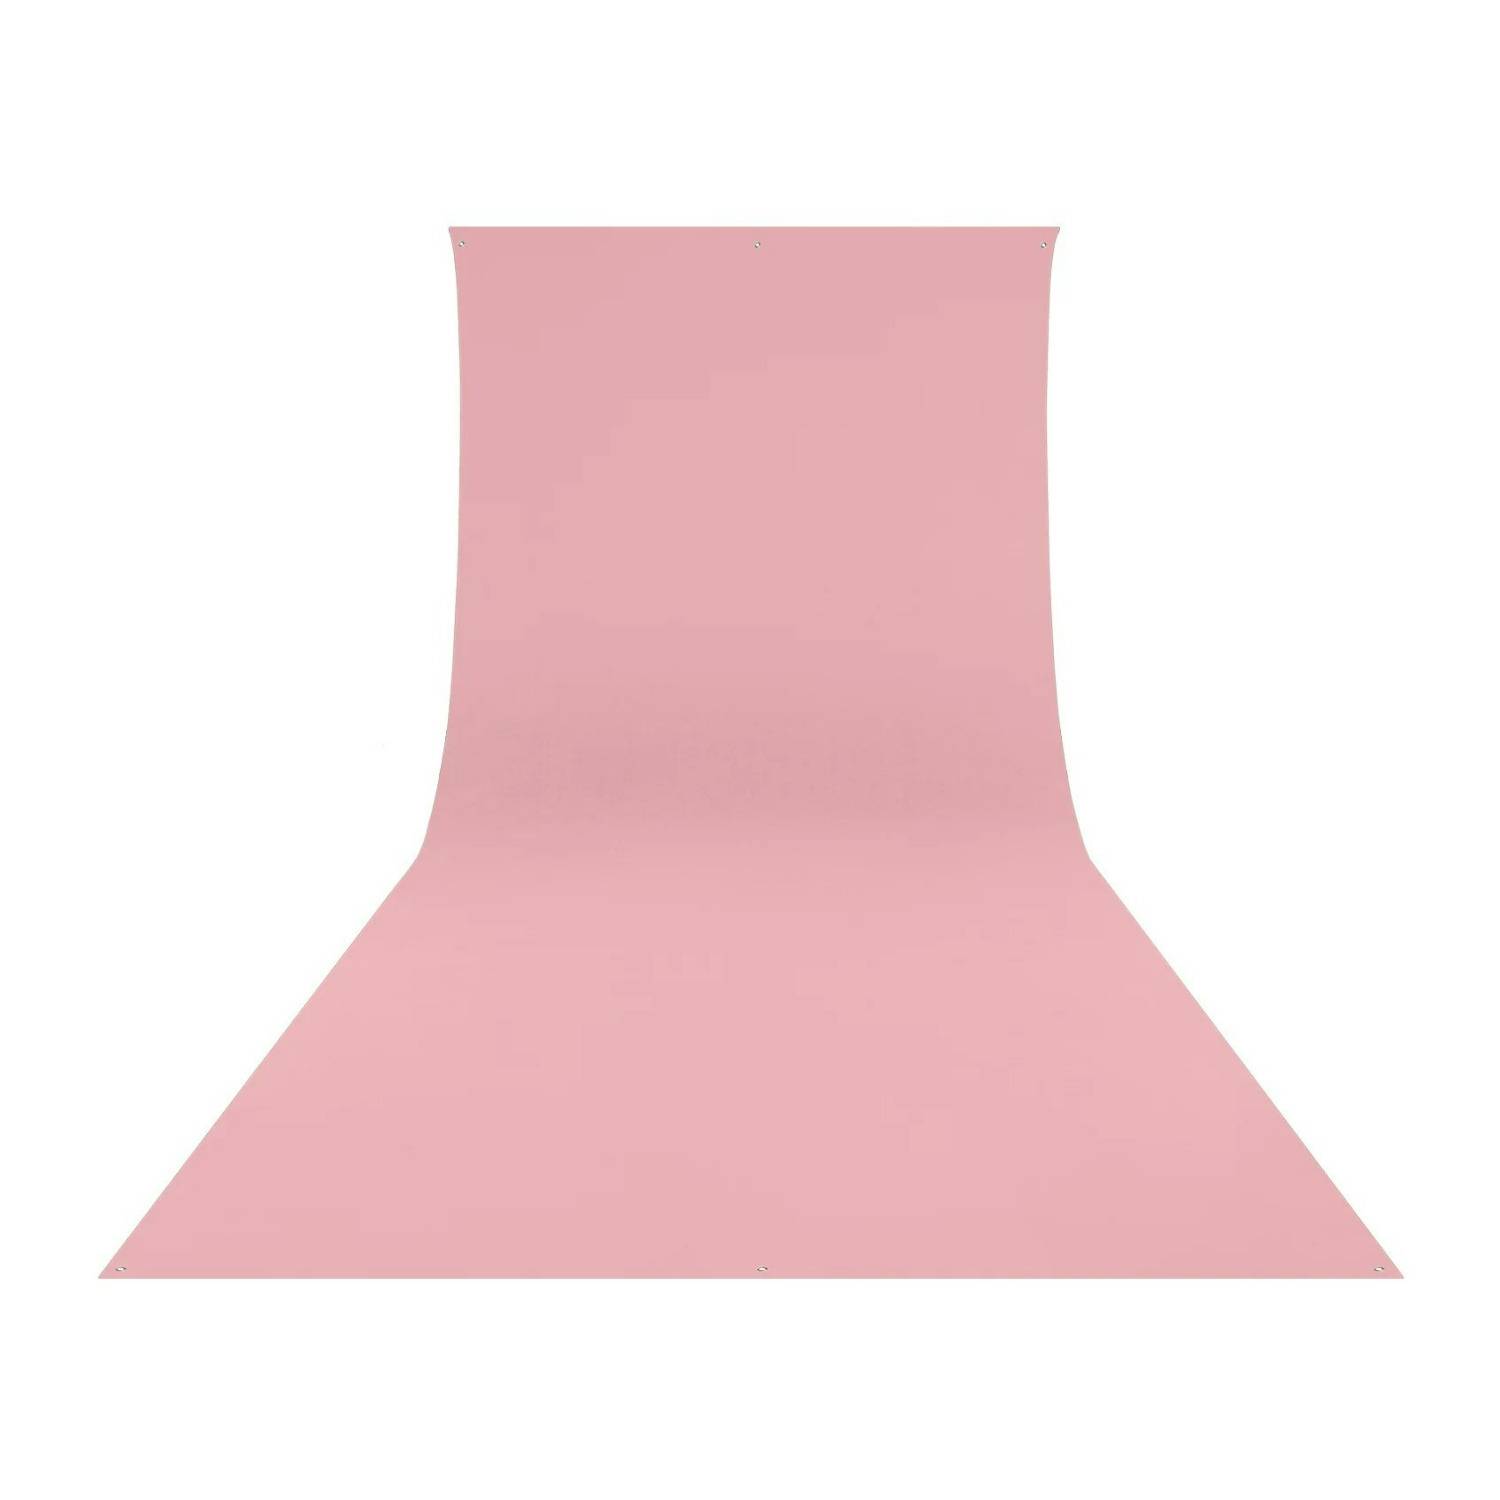 Westcott Wrinkle-Resistant, Machine-Washable Backdrop (Blush Pink, 9 x 10 Feet)